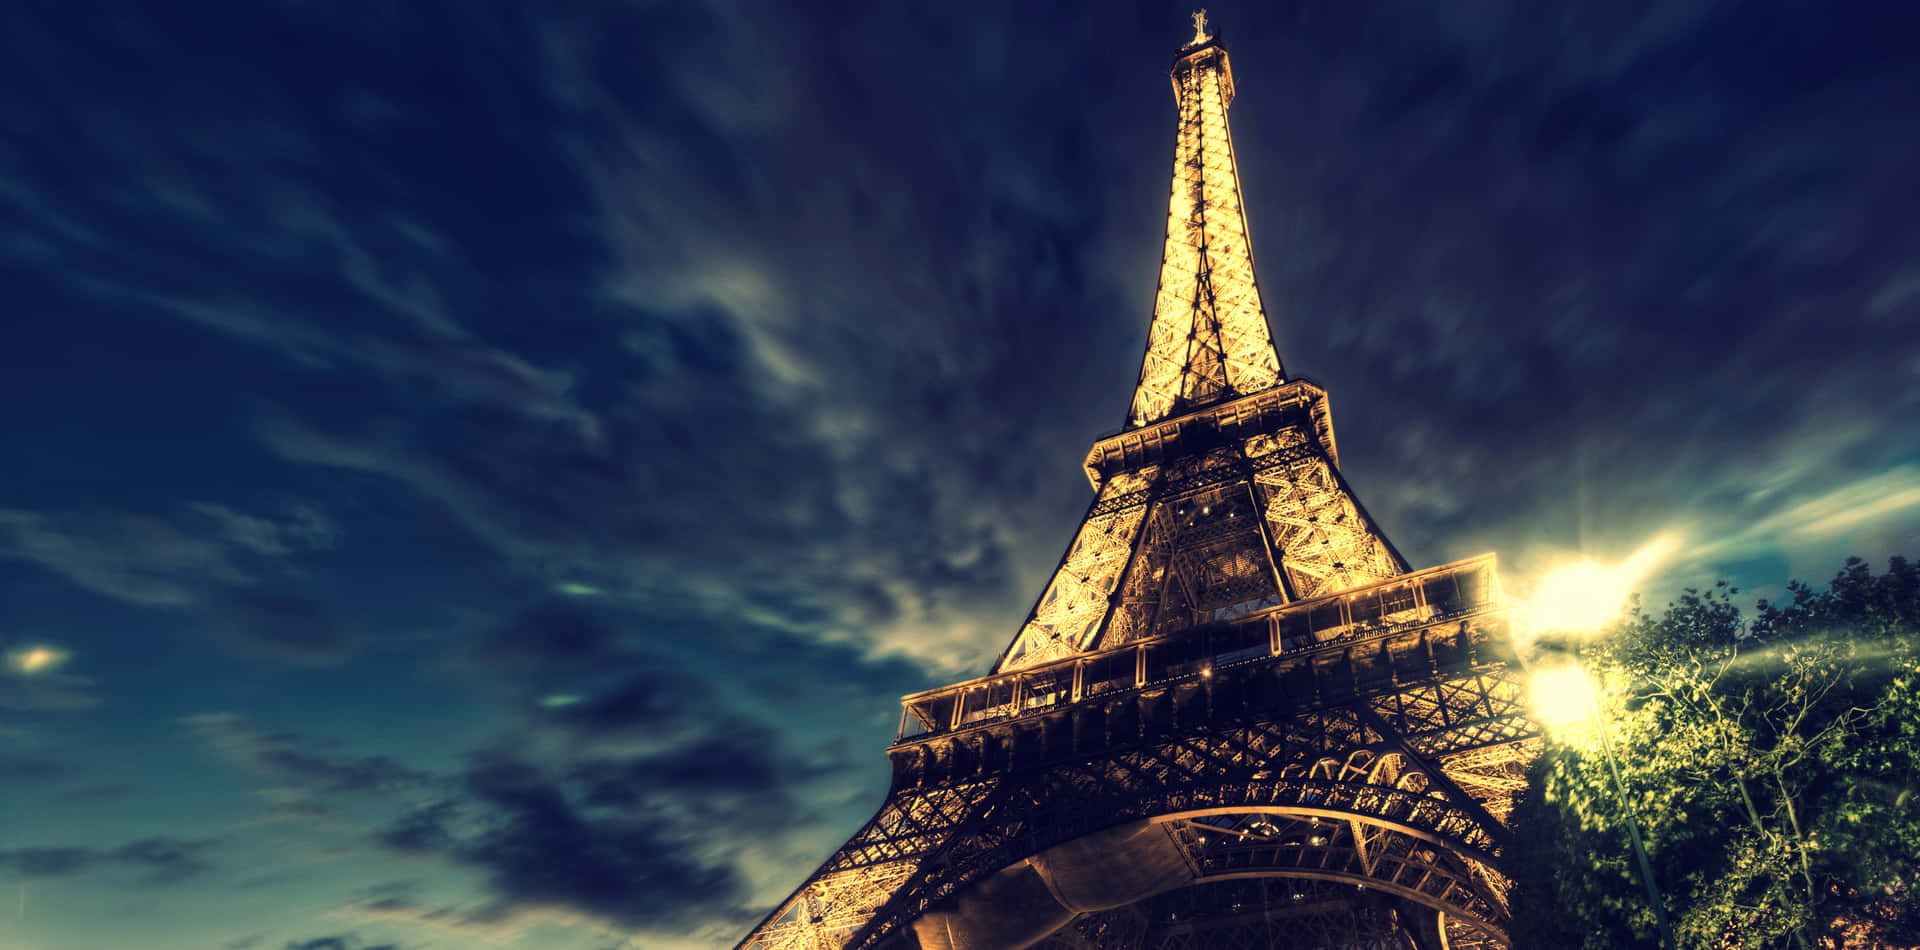 Imagende La Torre Eiffel De Noche En Un Paisaje